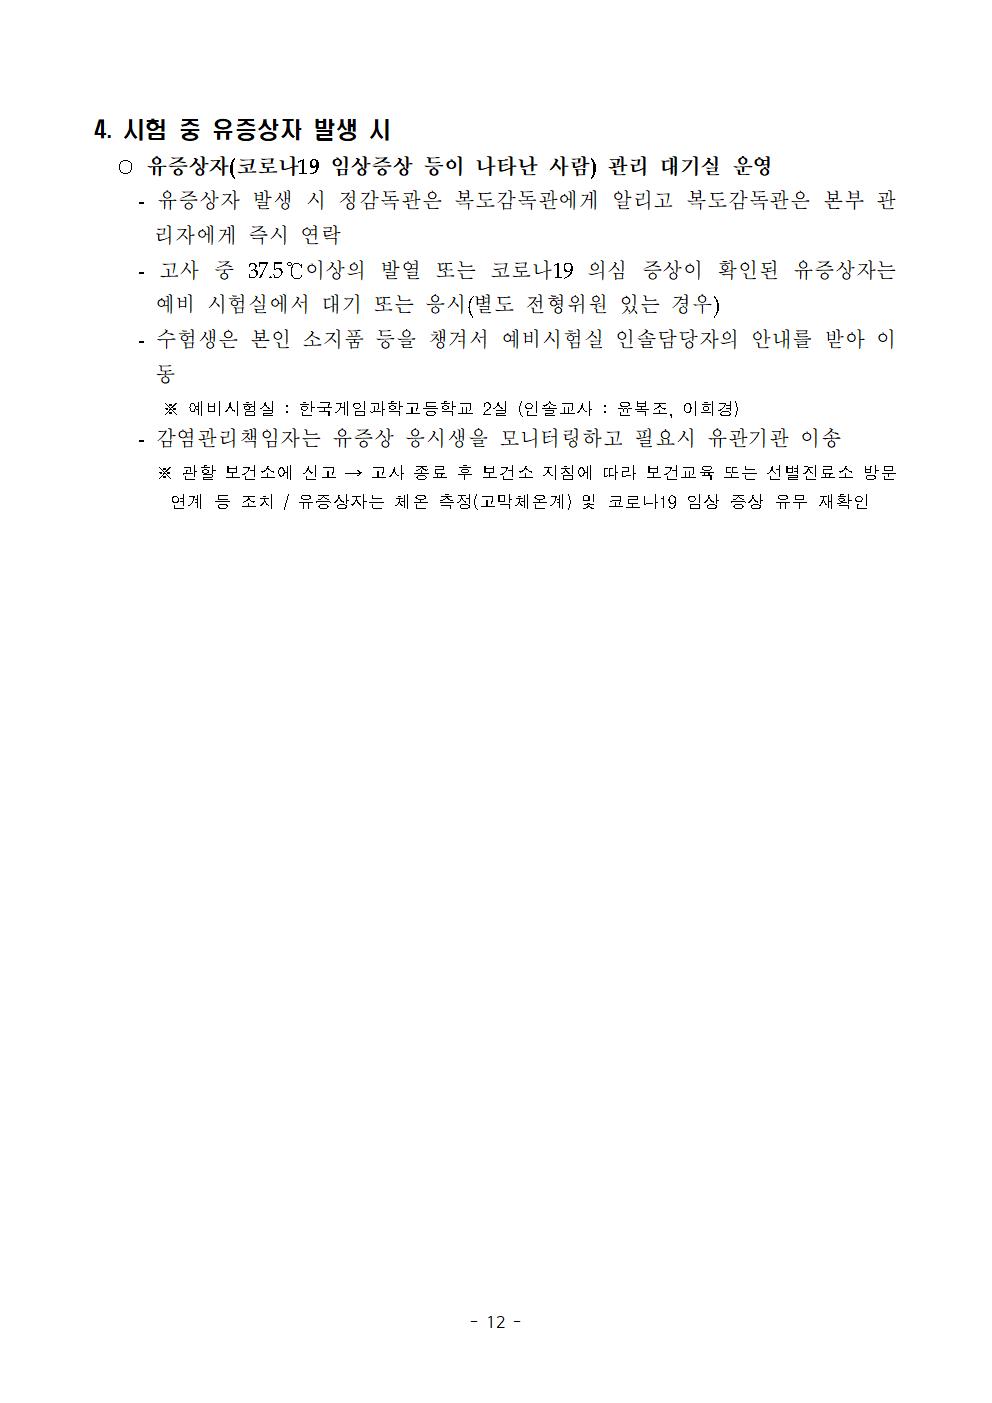 2021학년도 학교별 입학전형 안전관리 계획_한국게임과학고(홈페이지게시)014